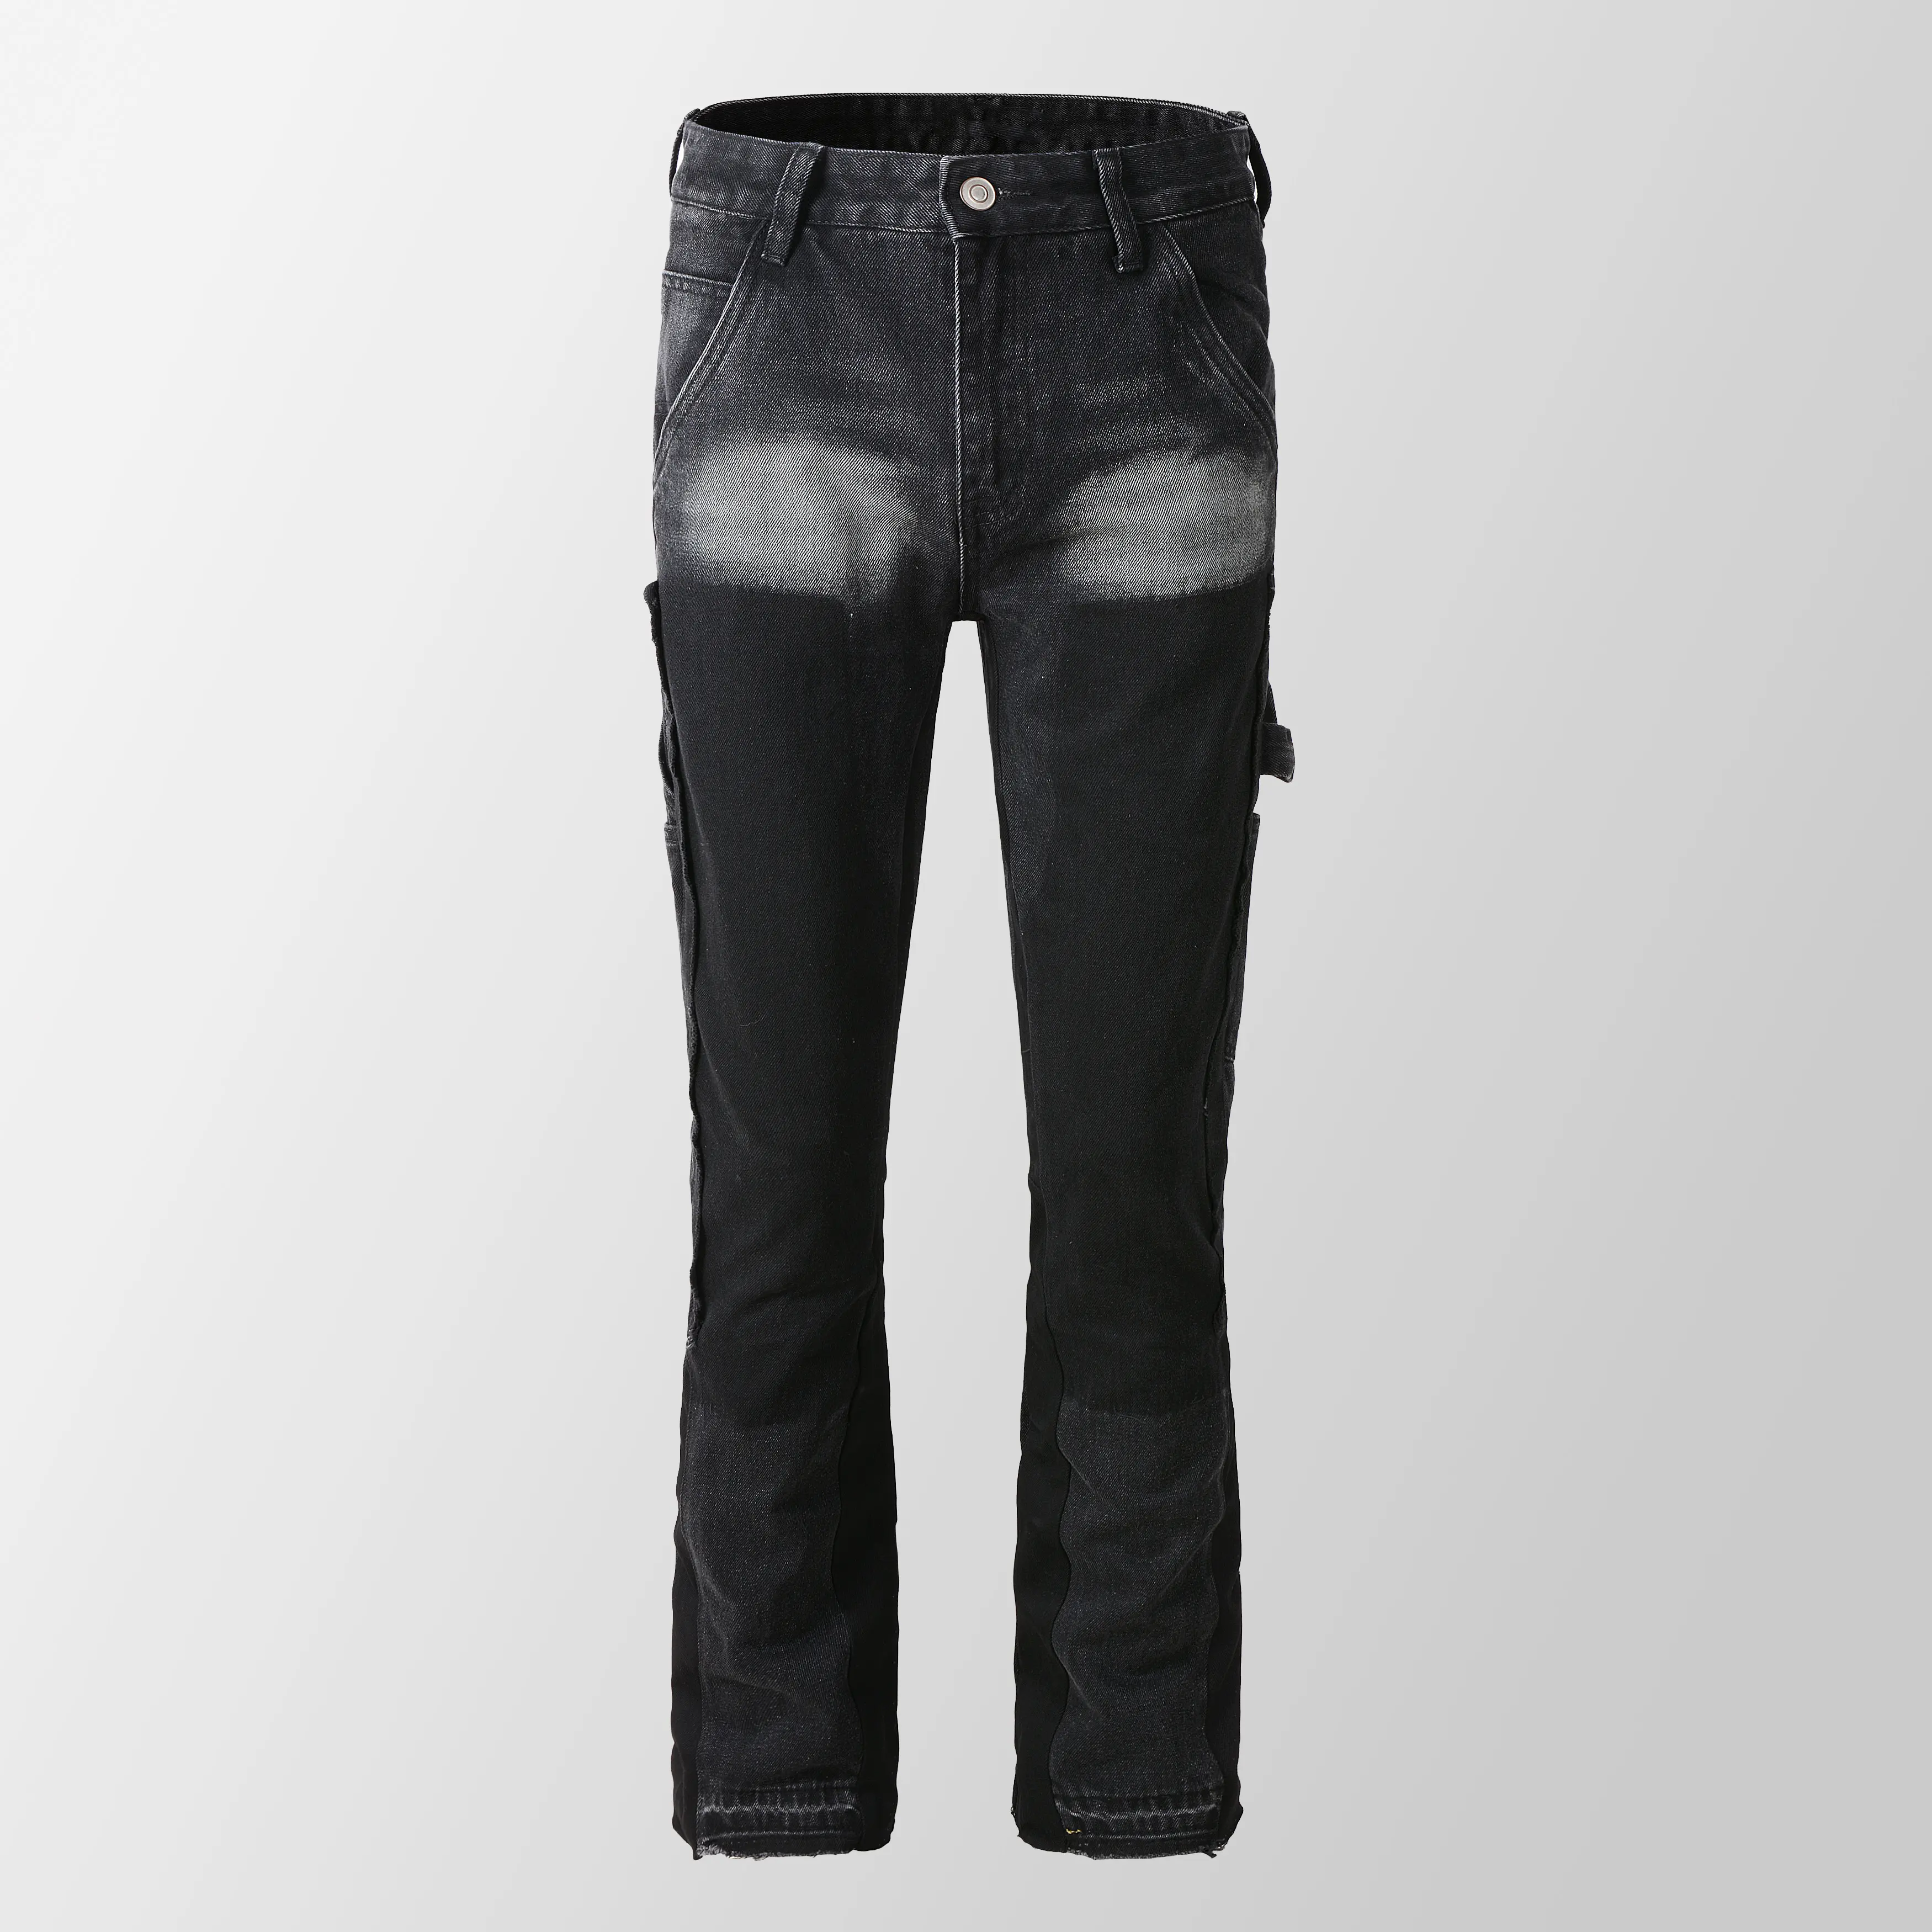 9303 Nova moda personalizar calças jeans empilhadas para homens calças jeans flare relaxadas empilhadas para homens